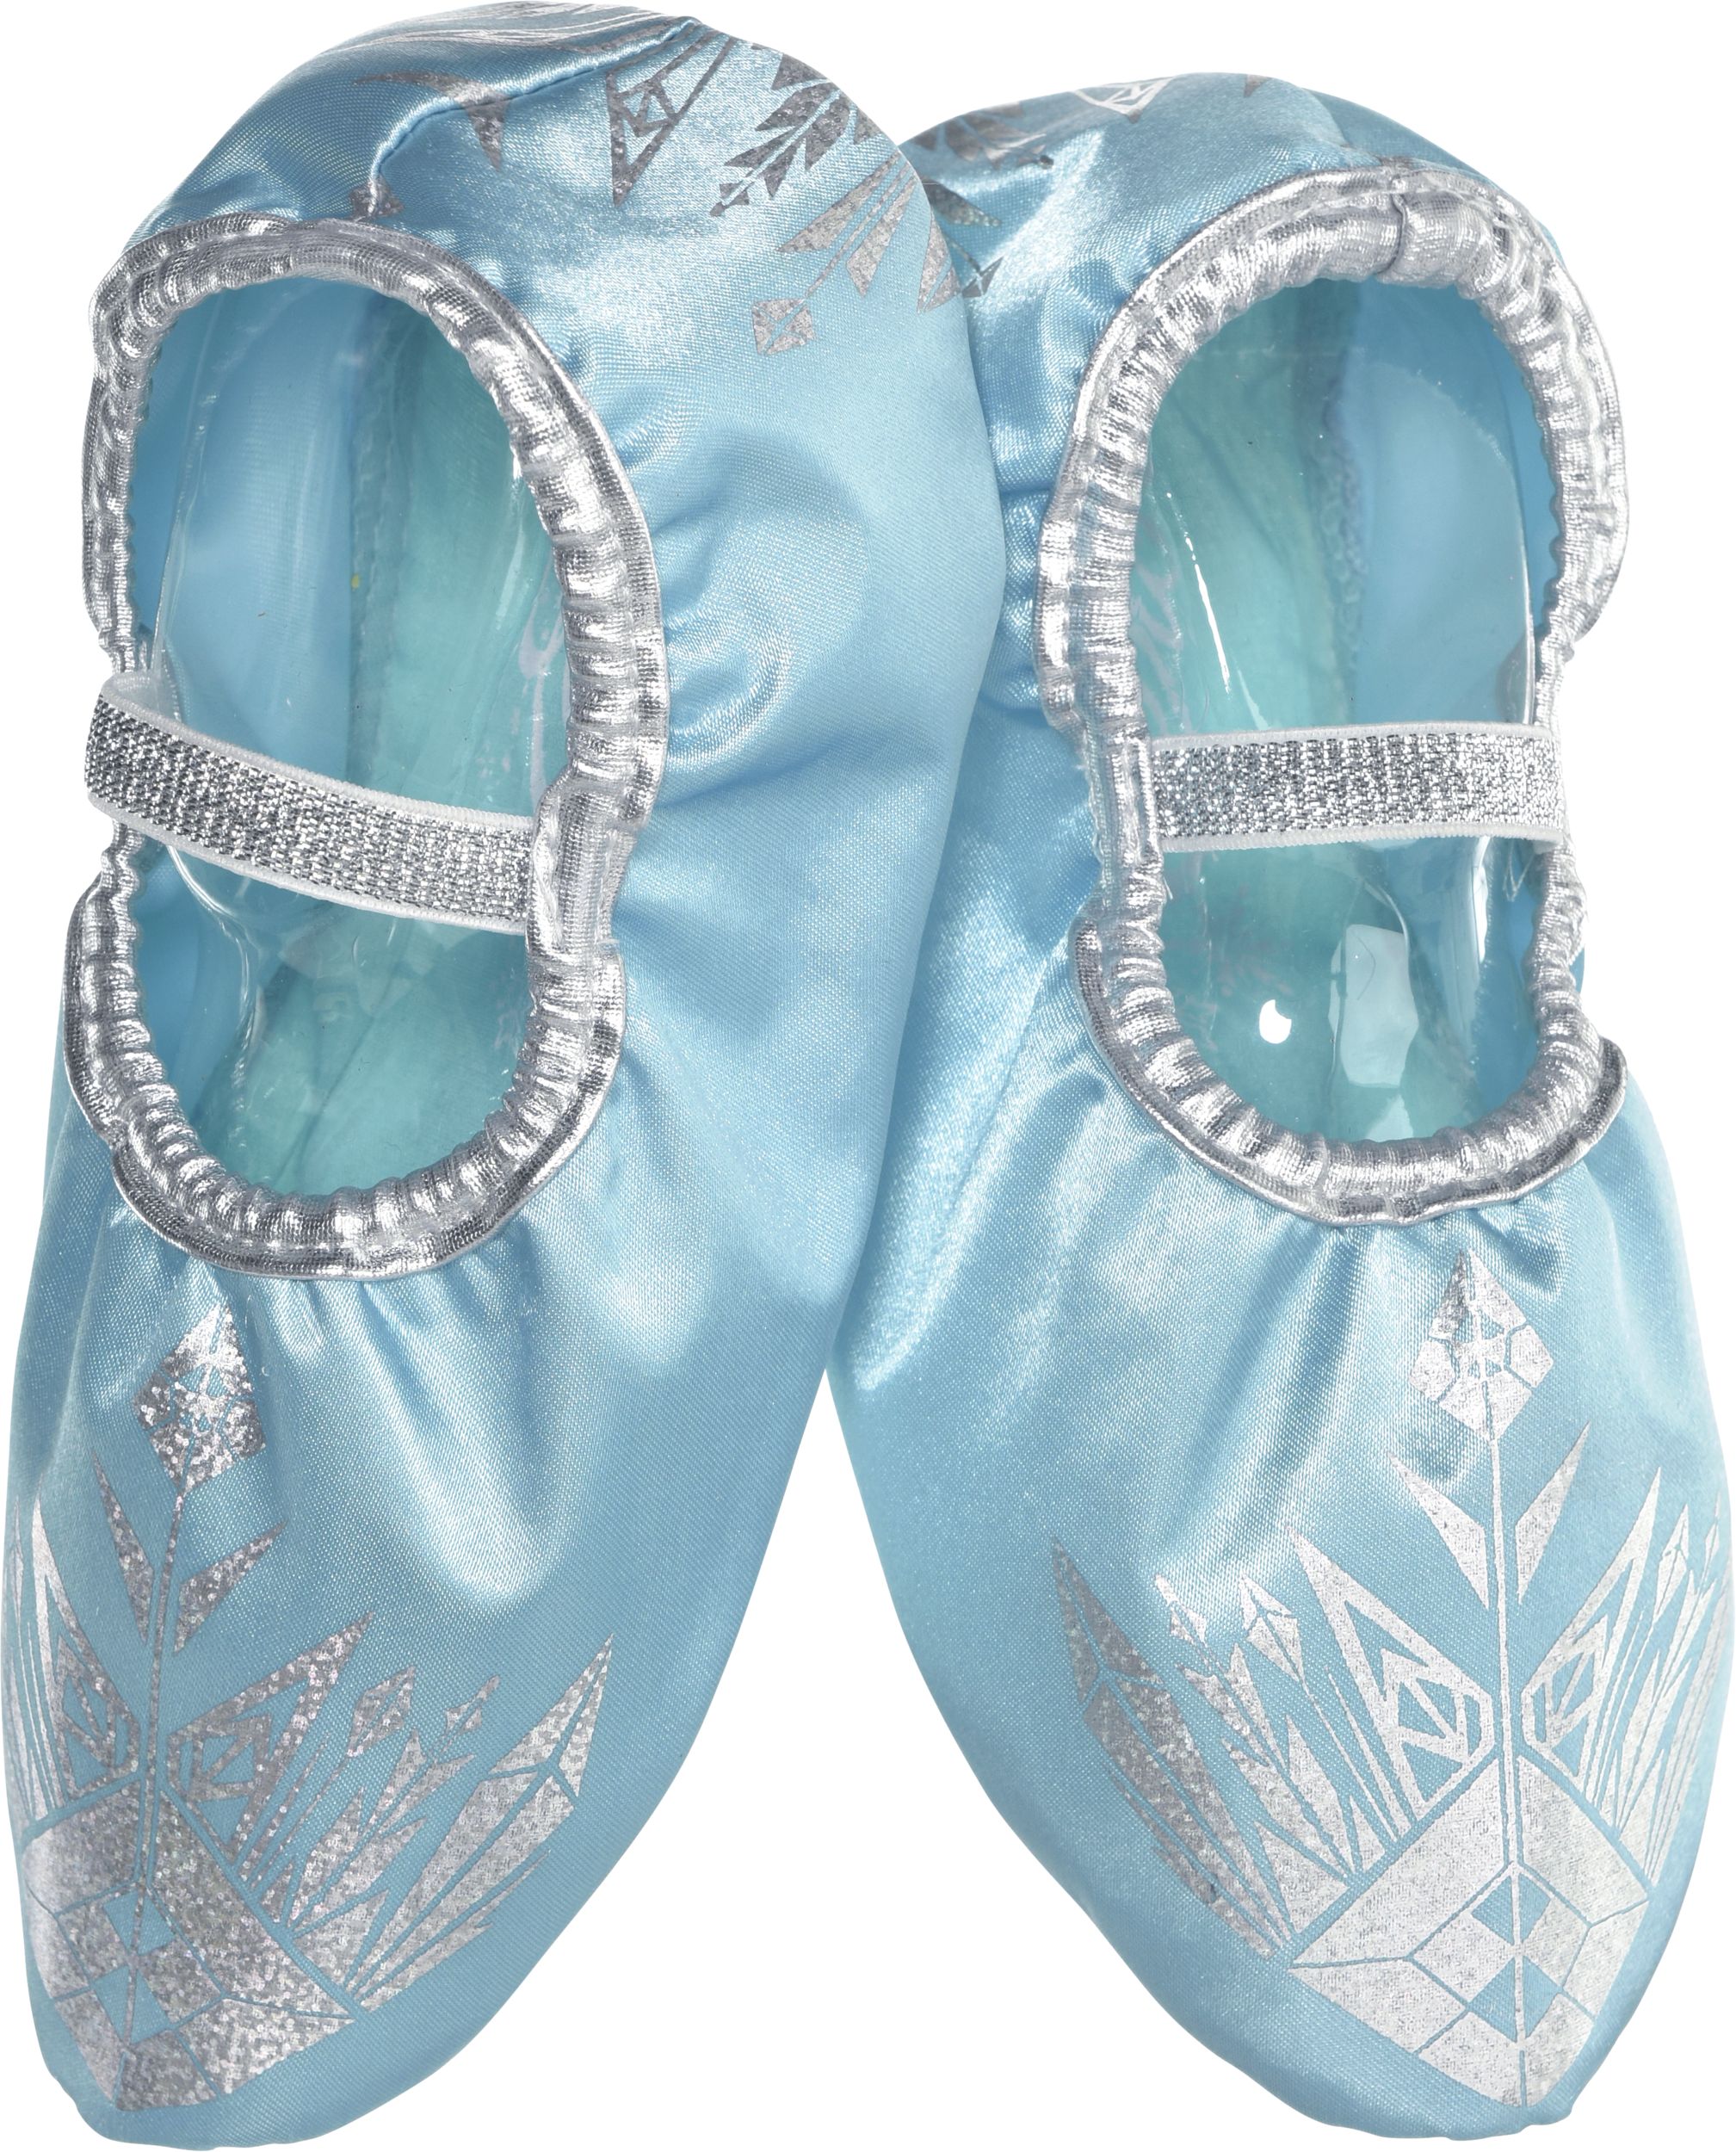 Déguisement Elsa + Accessoires Frozen La Reine des Neiges Disney 5